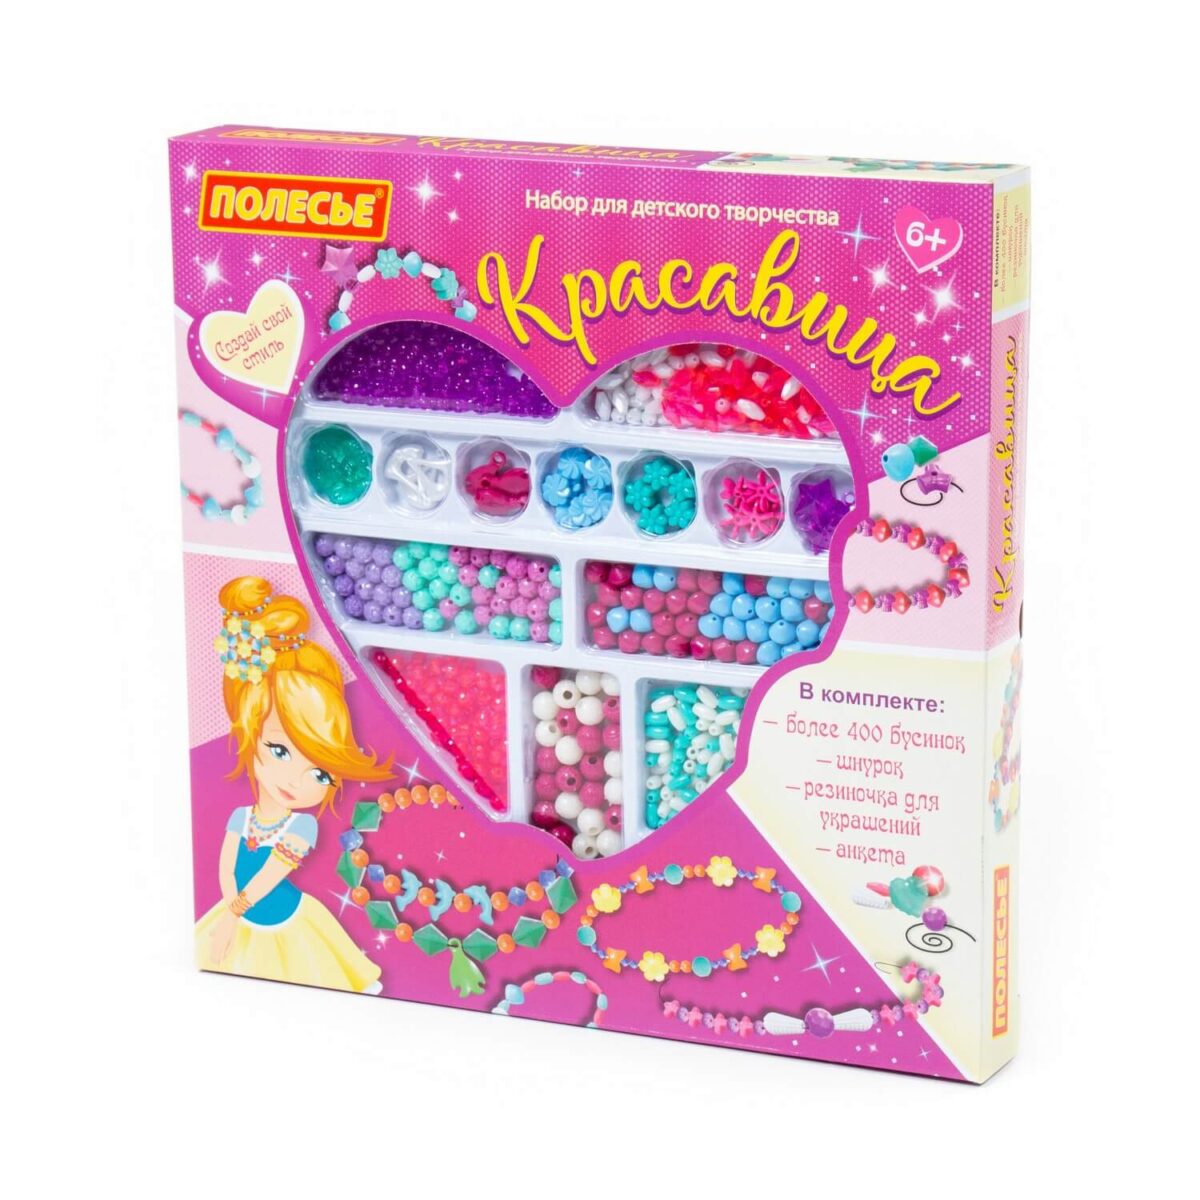 Набор для детского творчества "Красавица" (420 элементов) в коробке 1